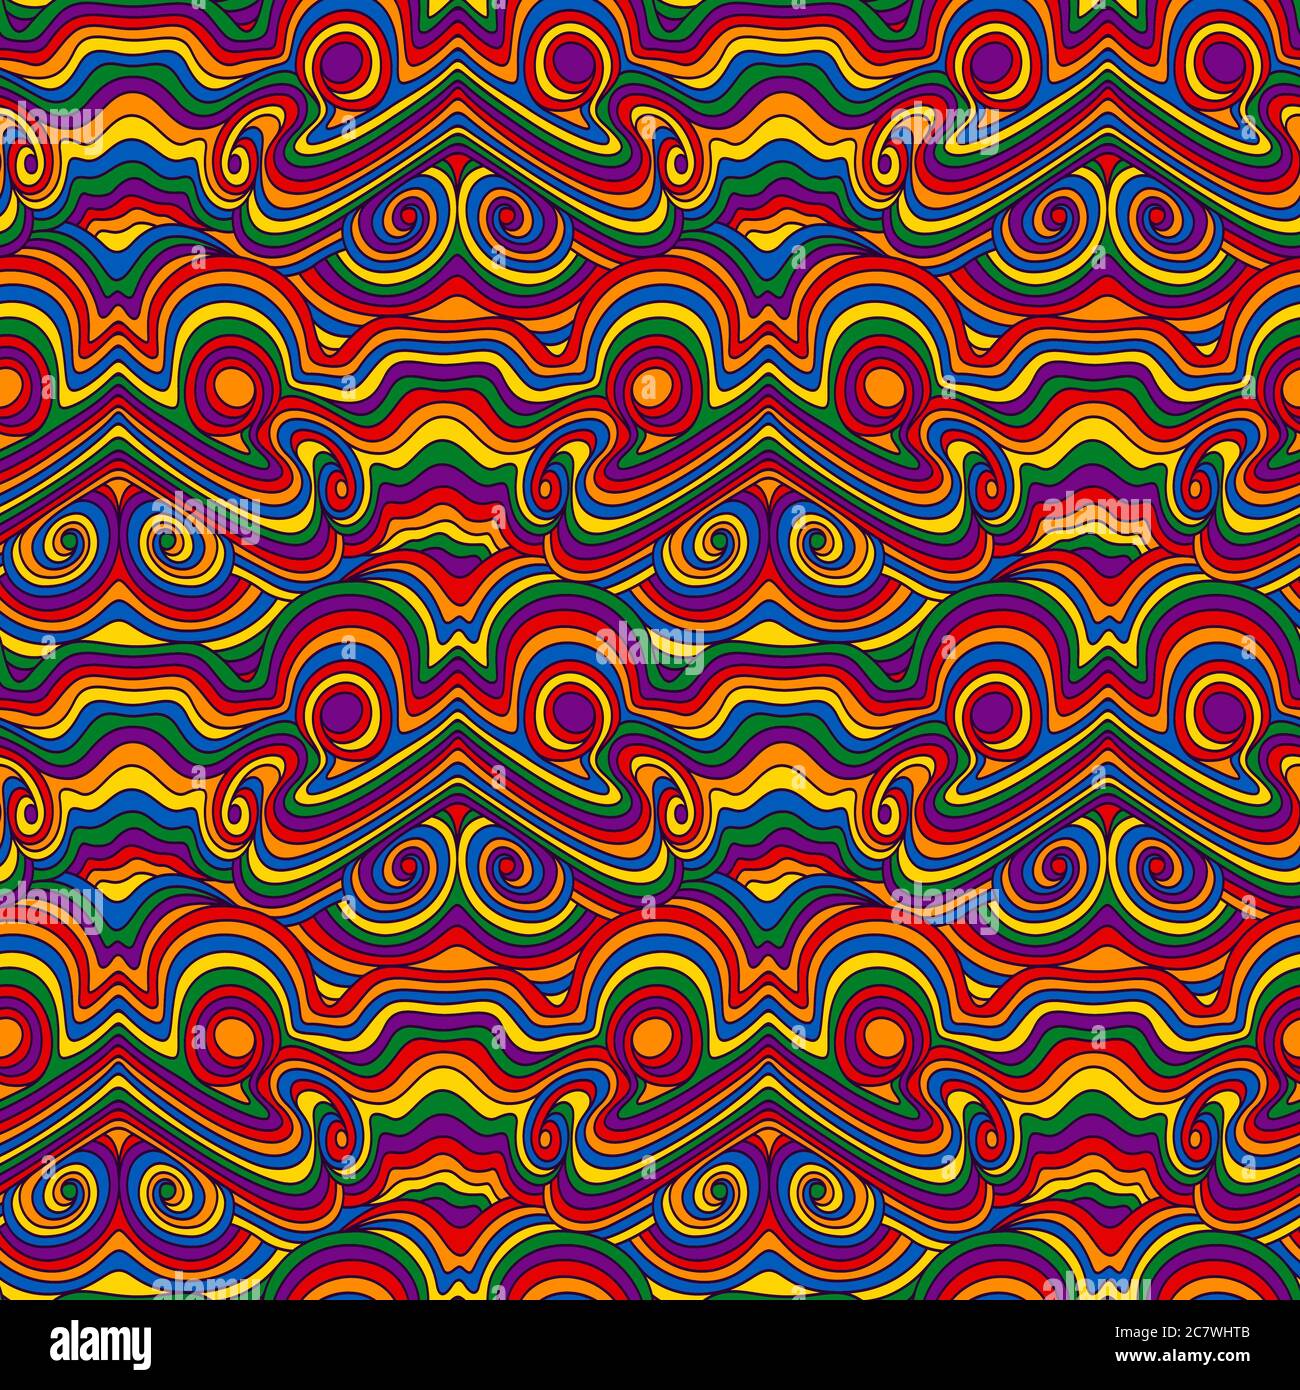 Nahtloses abstraktes Muster mit welligen Linien und mehrfarbigen Formen, Handzeichnung Vektor Stock Vektor